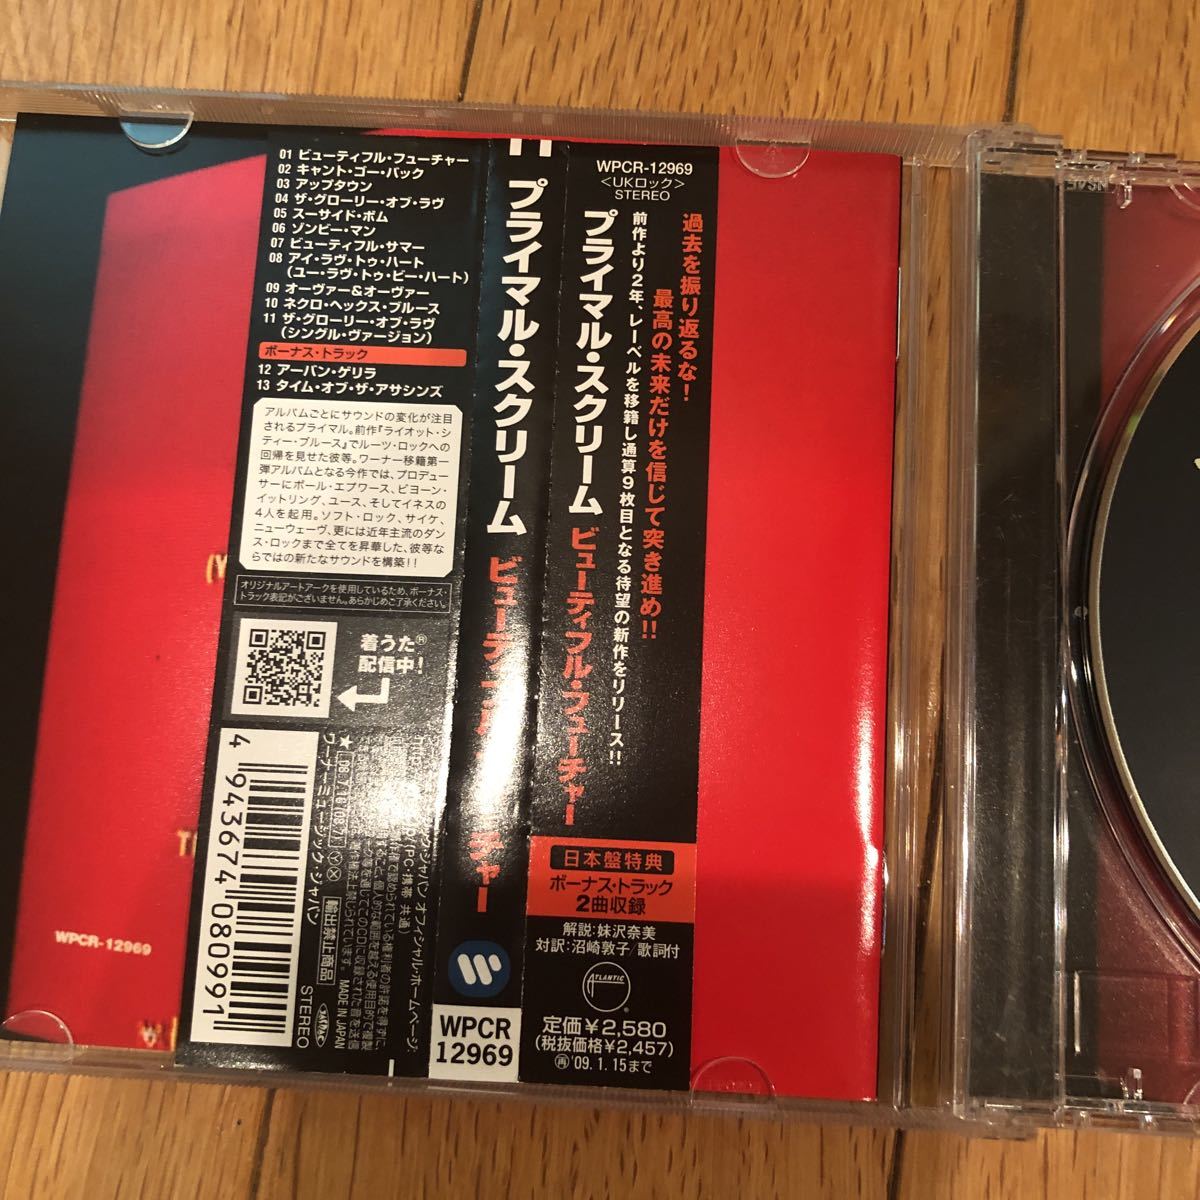 プライマル・スクリーム「ビューティフル・フューチャー」日本盤ボーナストラック収録primal scream